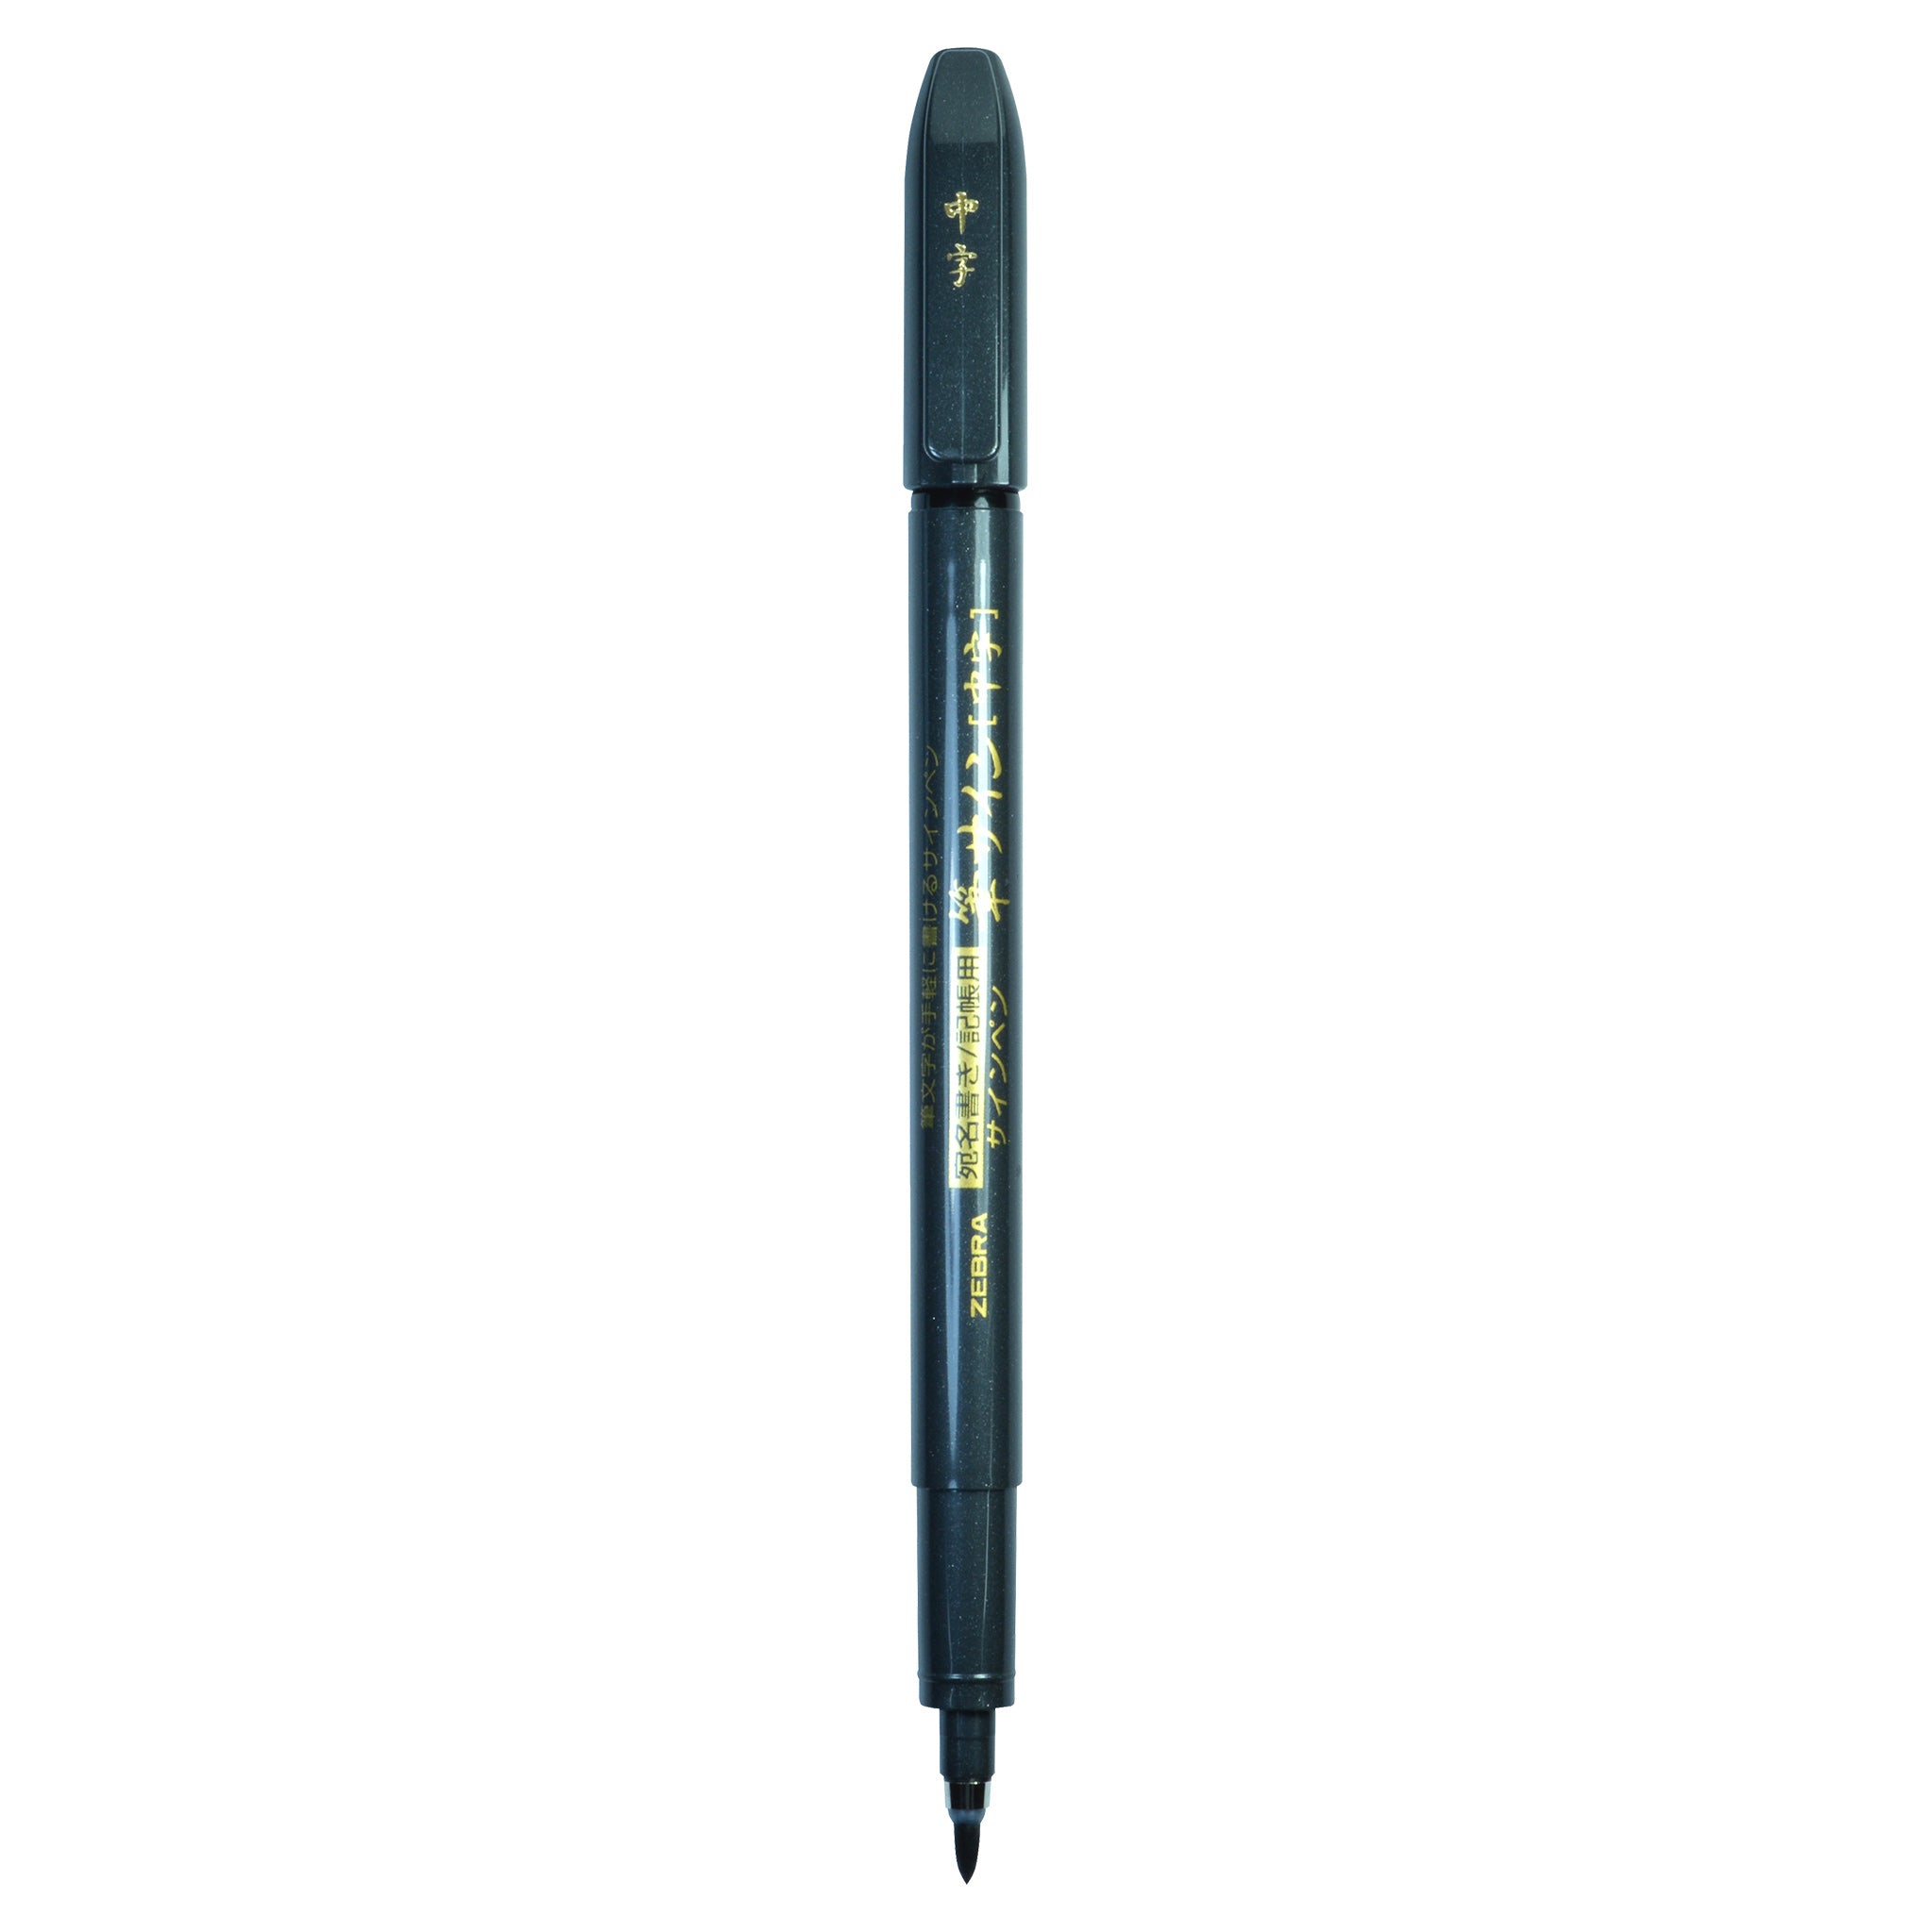 Brush Pen: Medium Tip, Pigment Ink, refillable